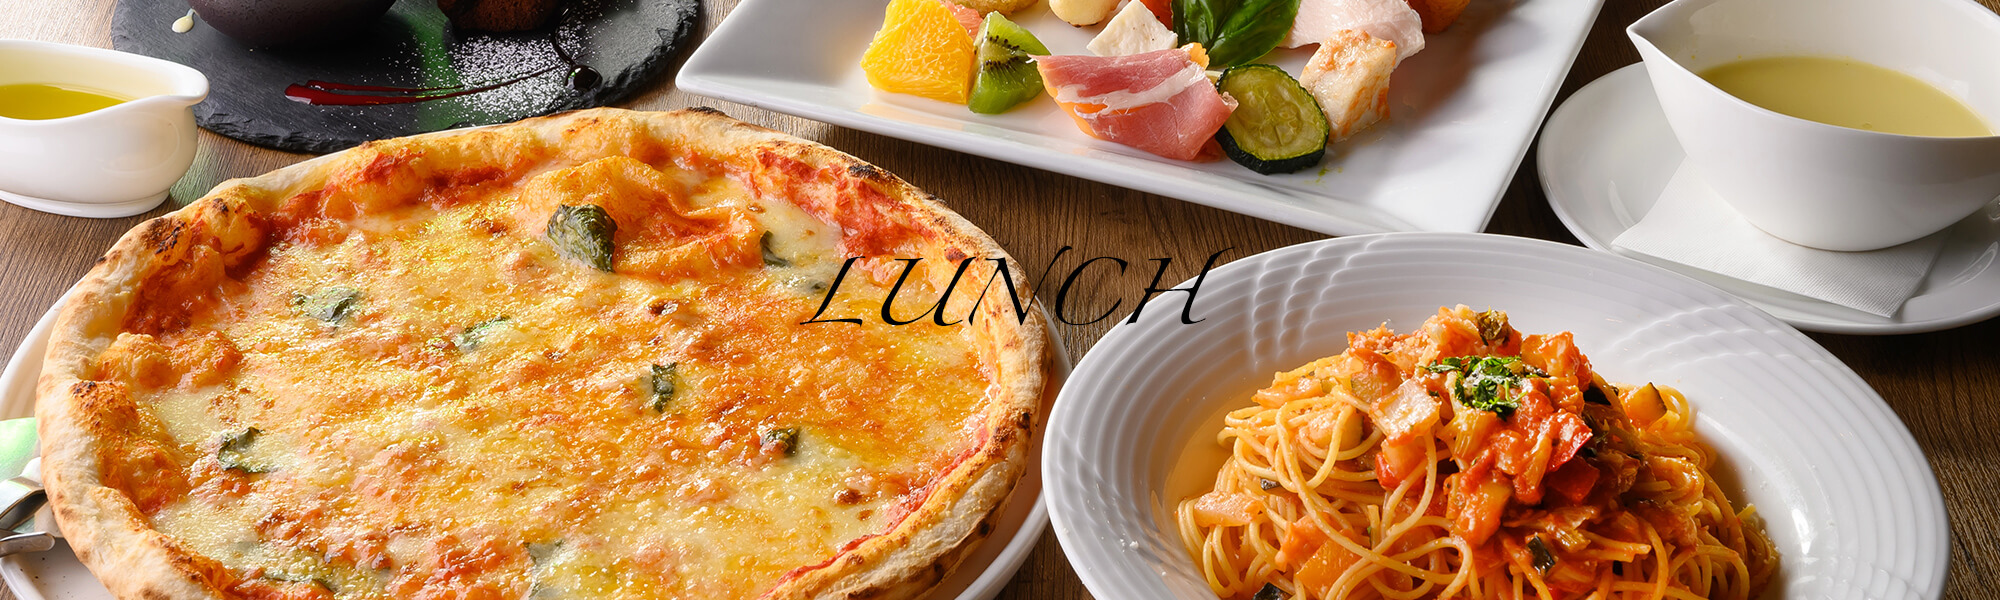 ピザなど、イタリアンのランチの料理が並んだ画像